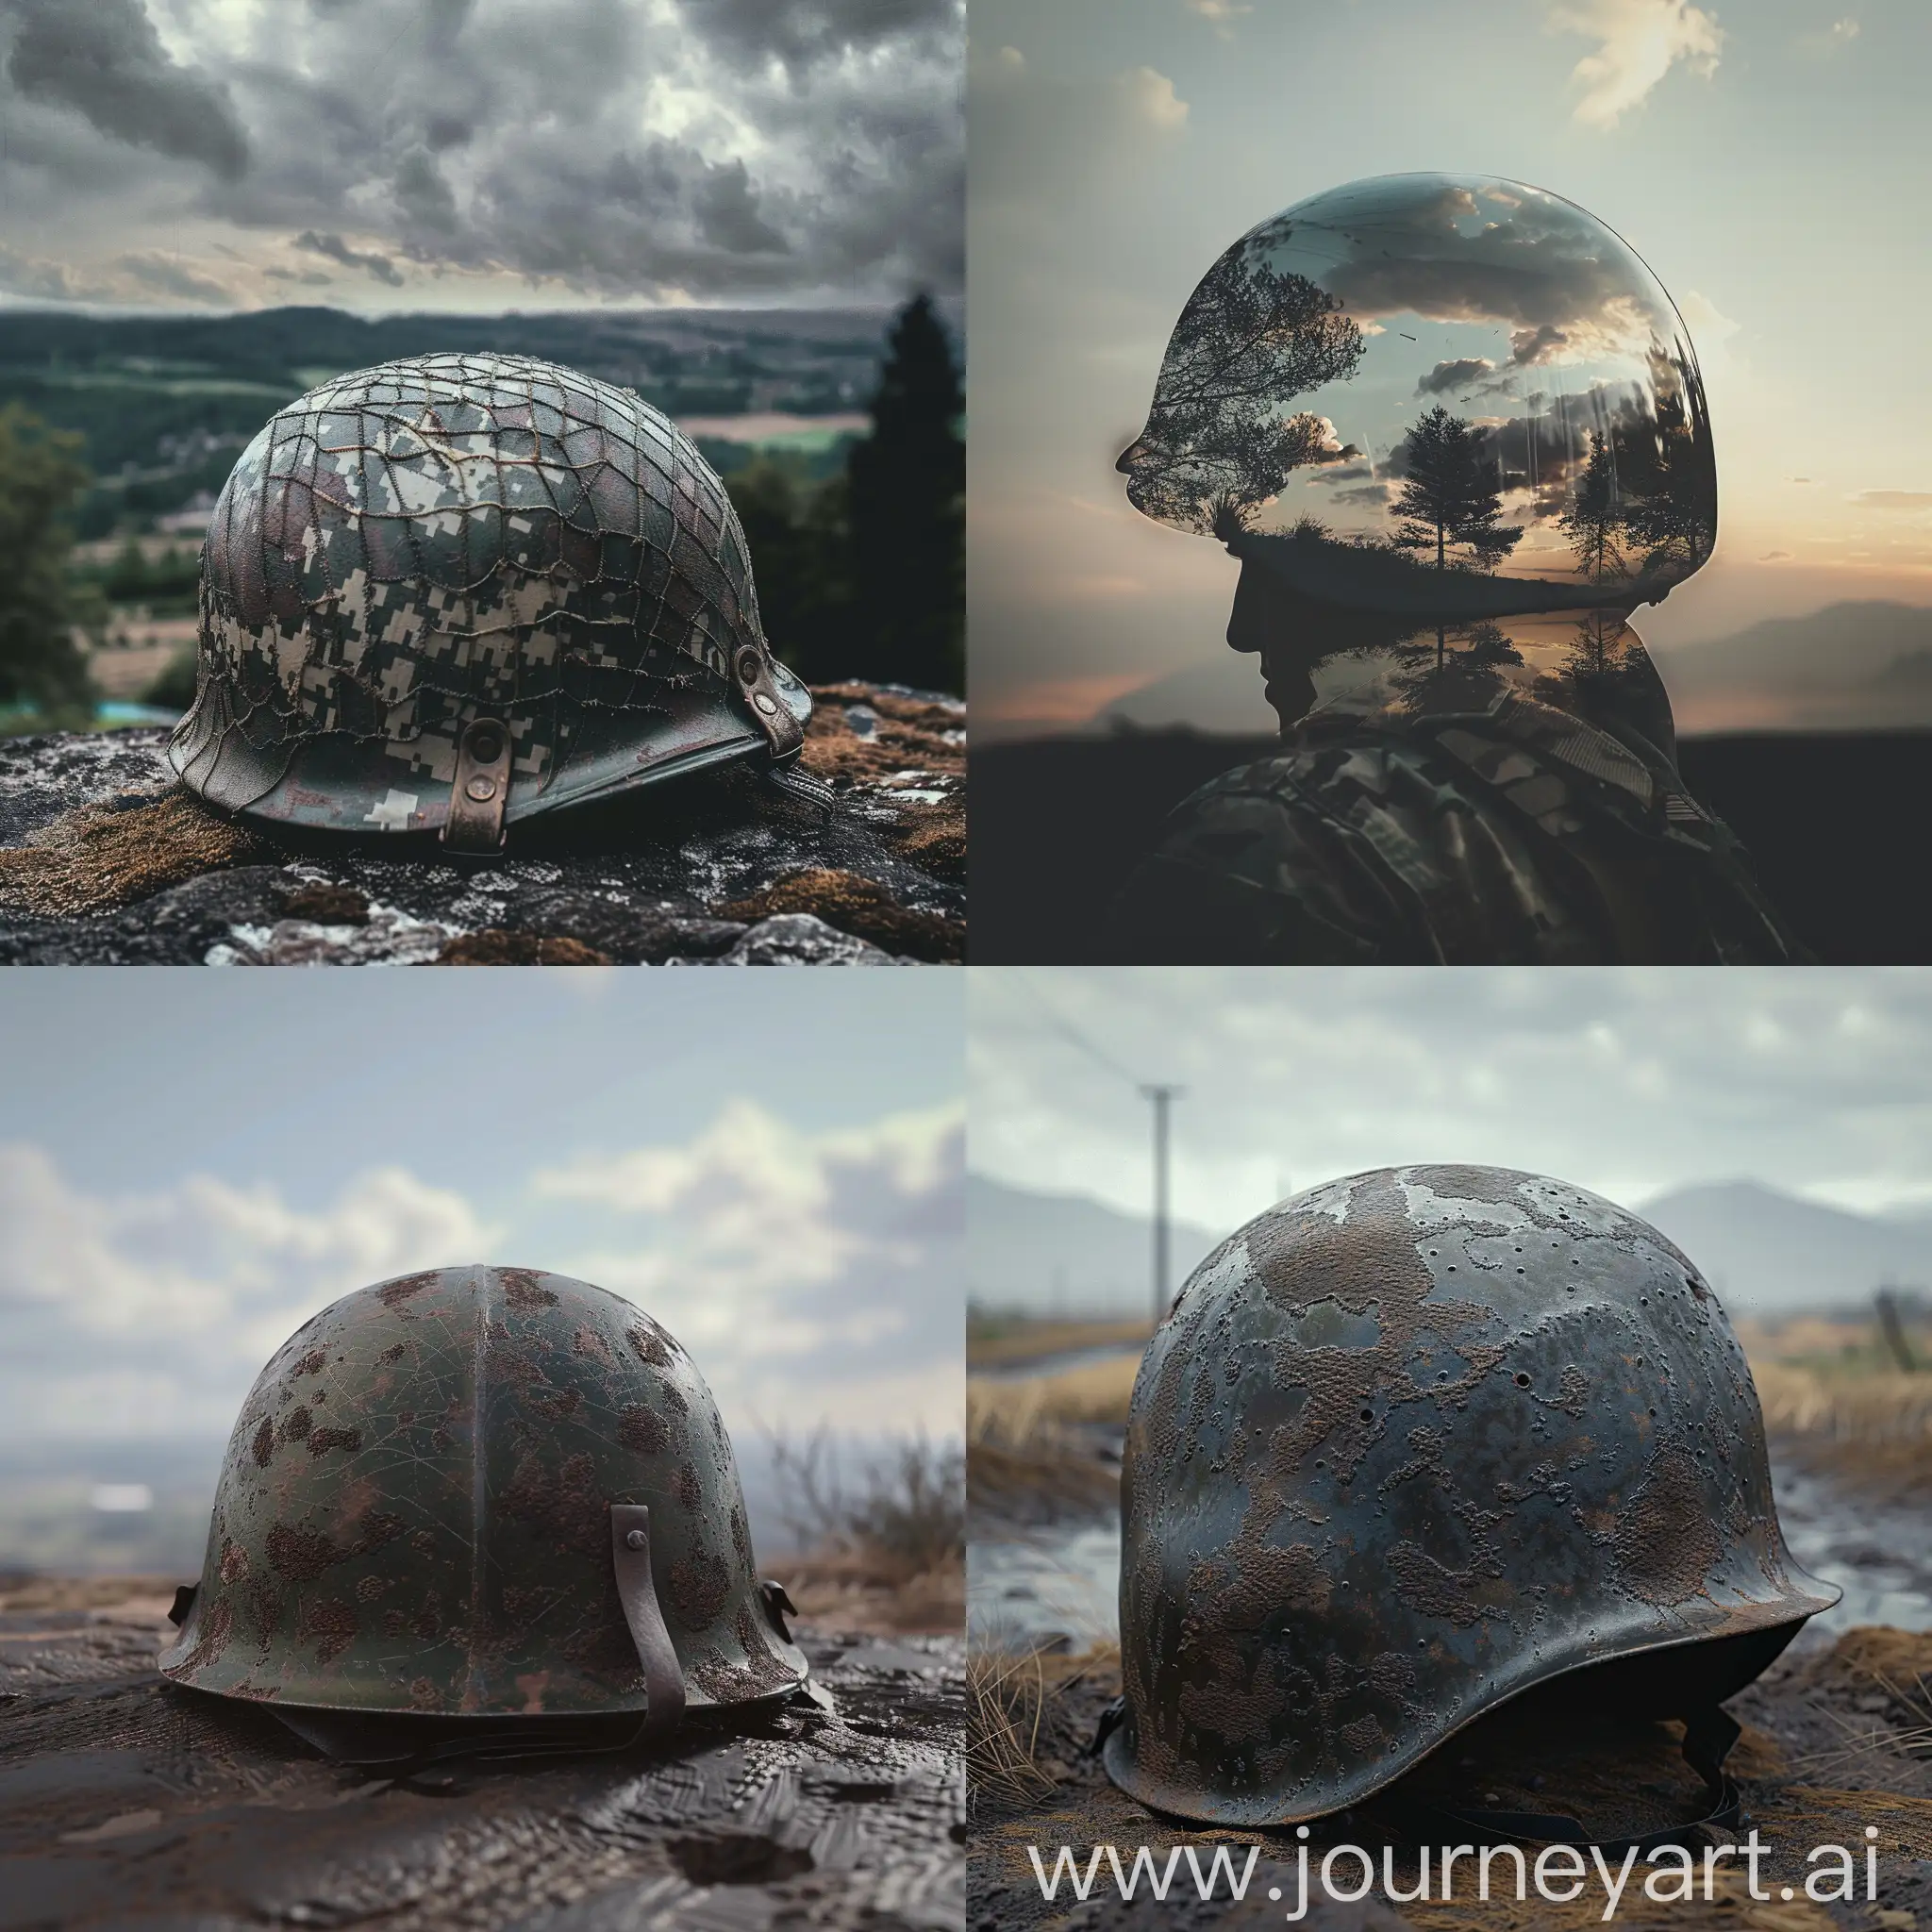 Empty-Soldiers-Helmet-on-Barren-Landscape